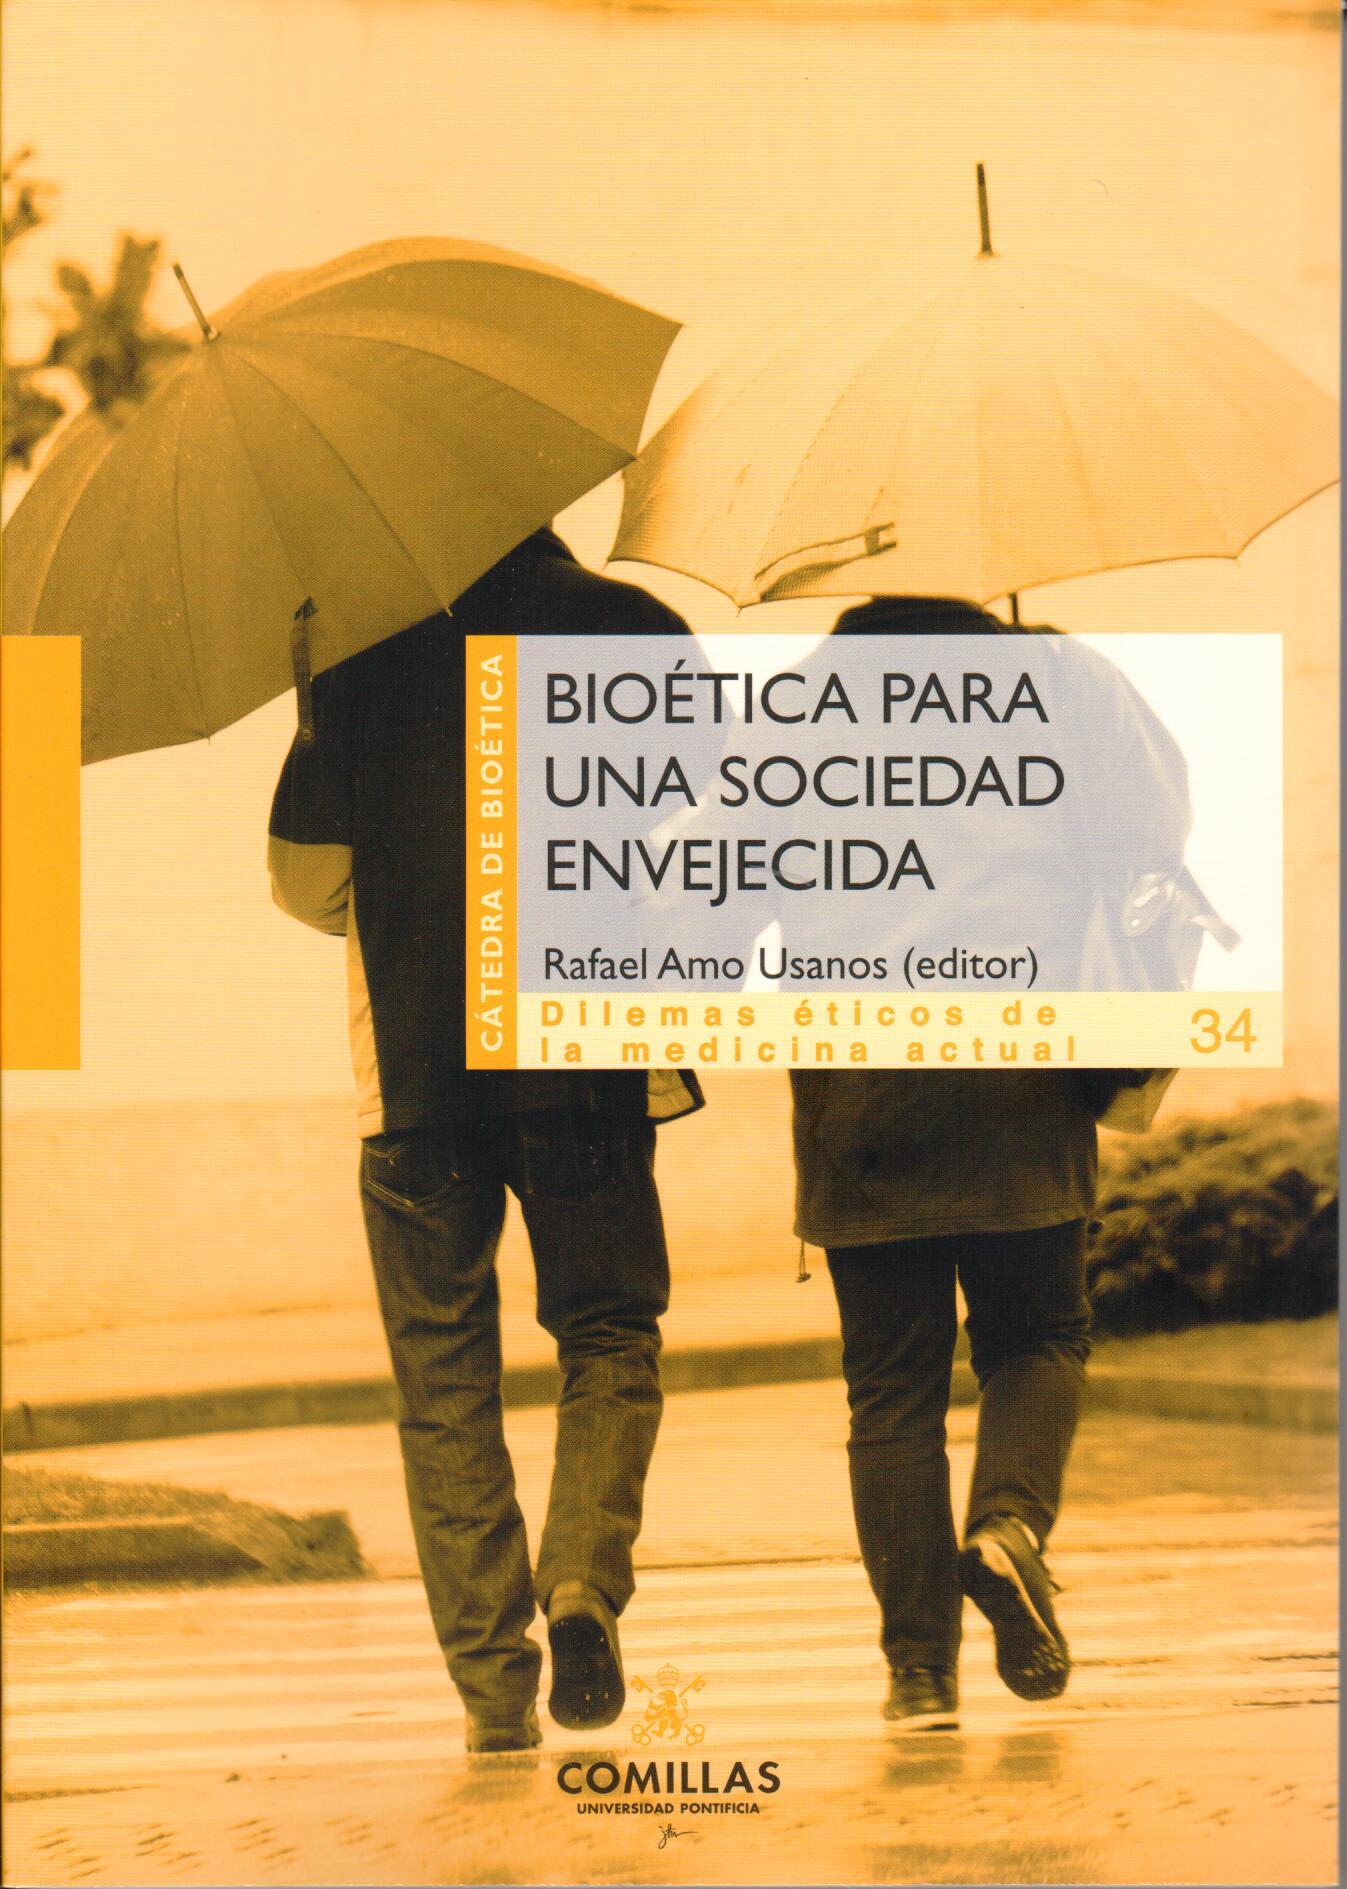 Imagen de portada del libro Bioética para una sociedad envejecida